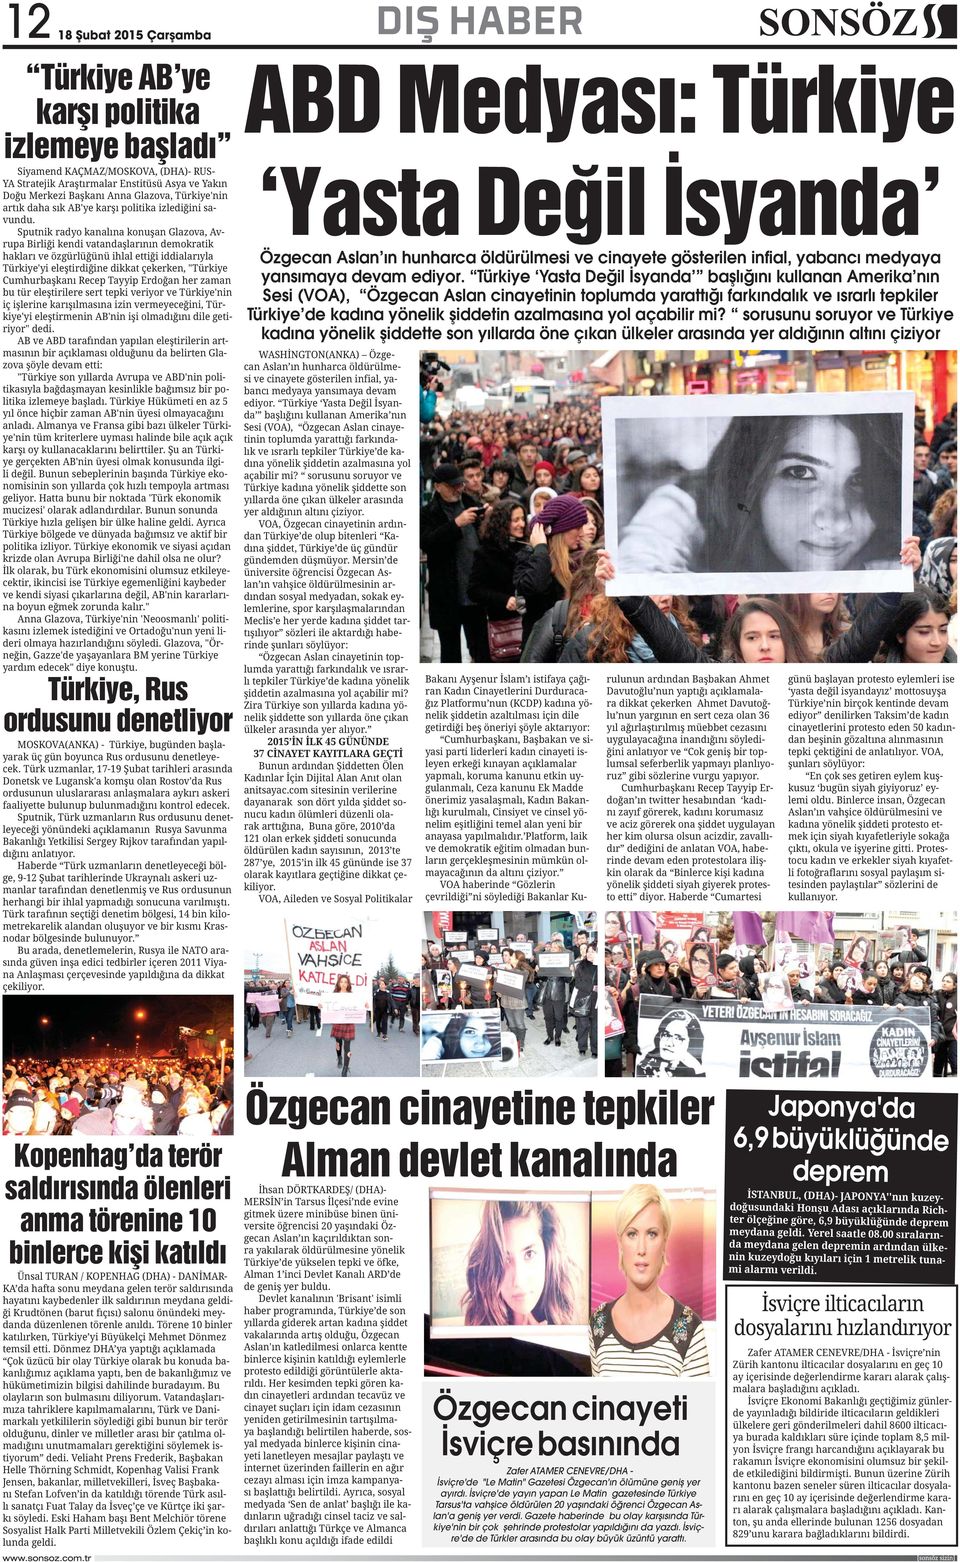 Türkiye Yasta Değil İsyanda başlığını kullanan Amerika nın Sesi (VOA), Özgecan Aslan cinayetinin toplumda yarattığı farkındalık ve ısrarlı tepkiler Türkiye de kadına yönelik şiddetin azalmasına yol